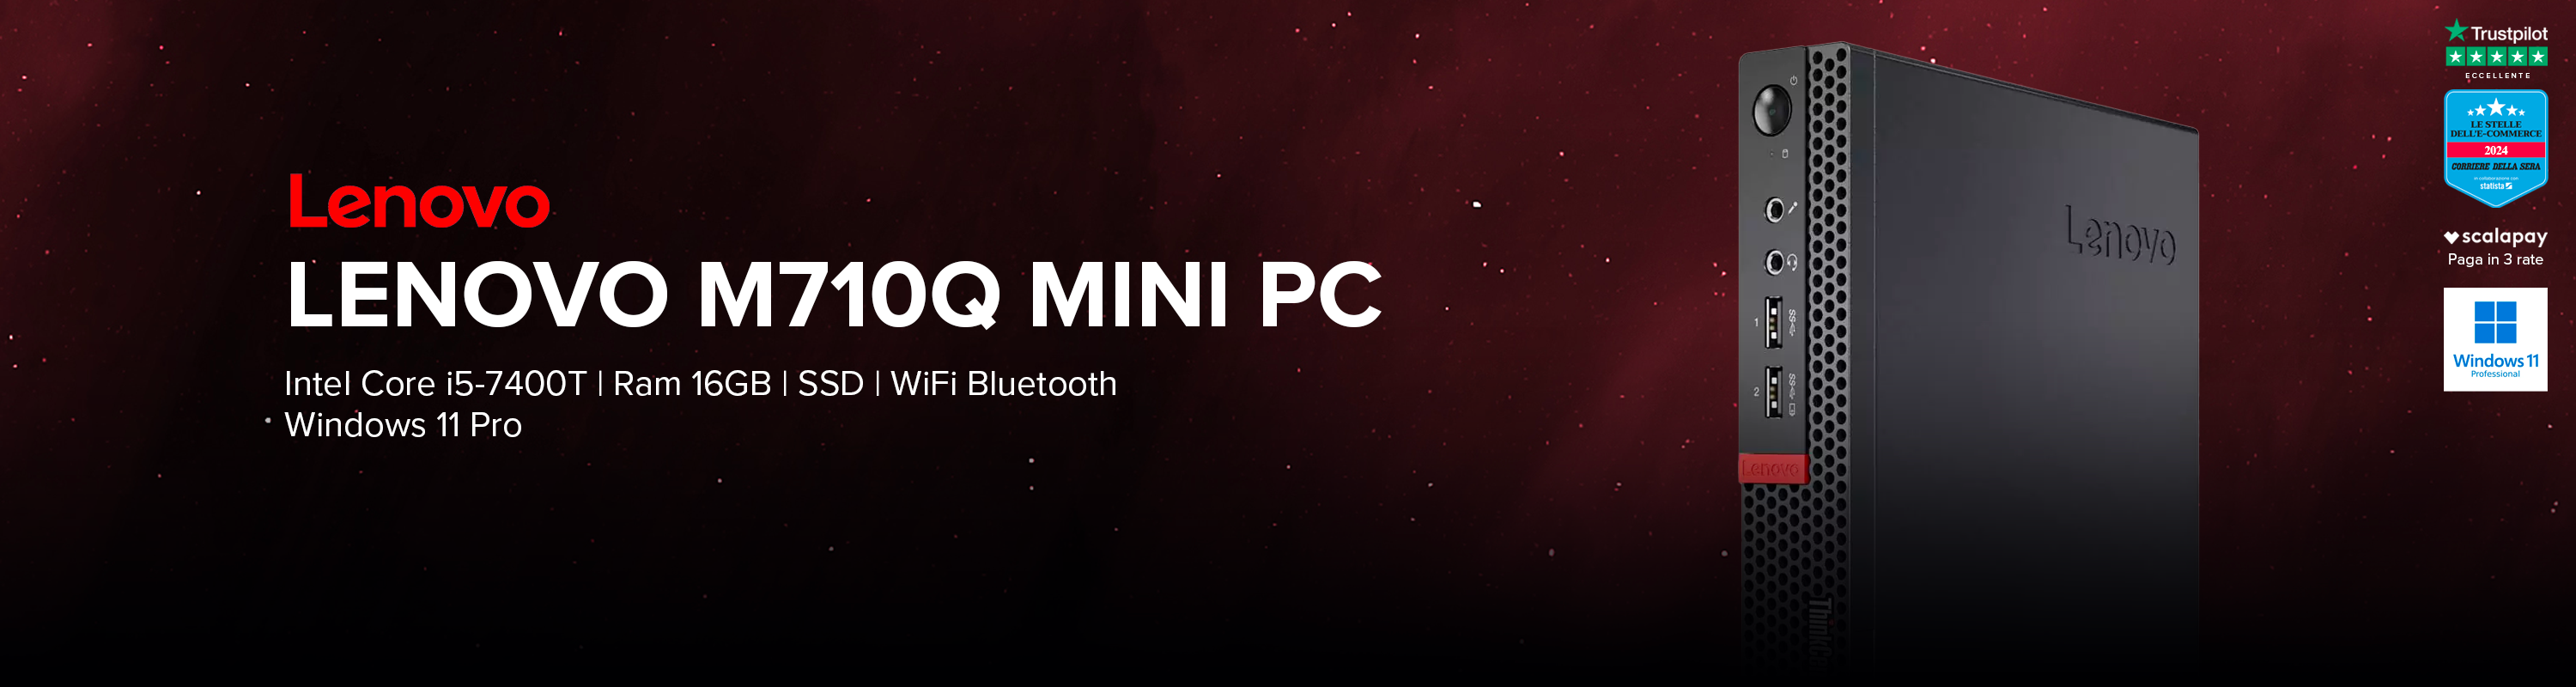 Lenovo M710q Mini PC | Intel Core i5-7400T